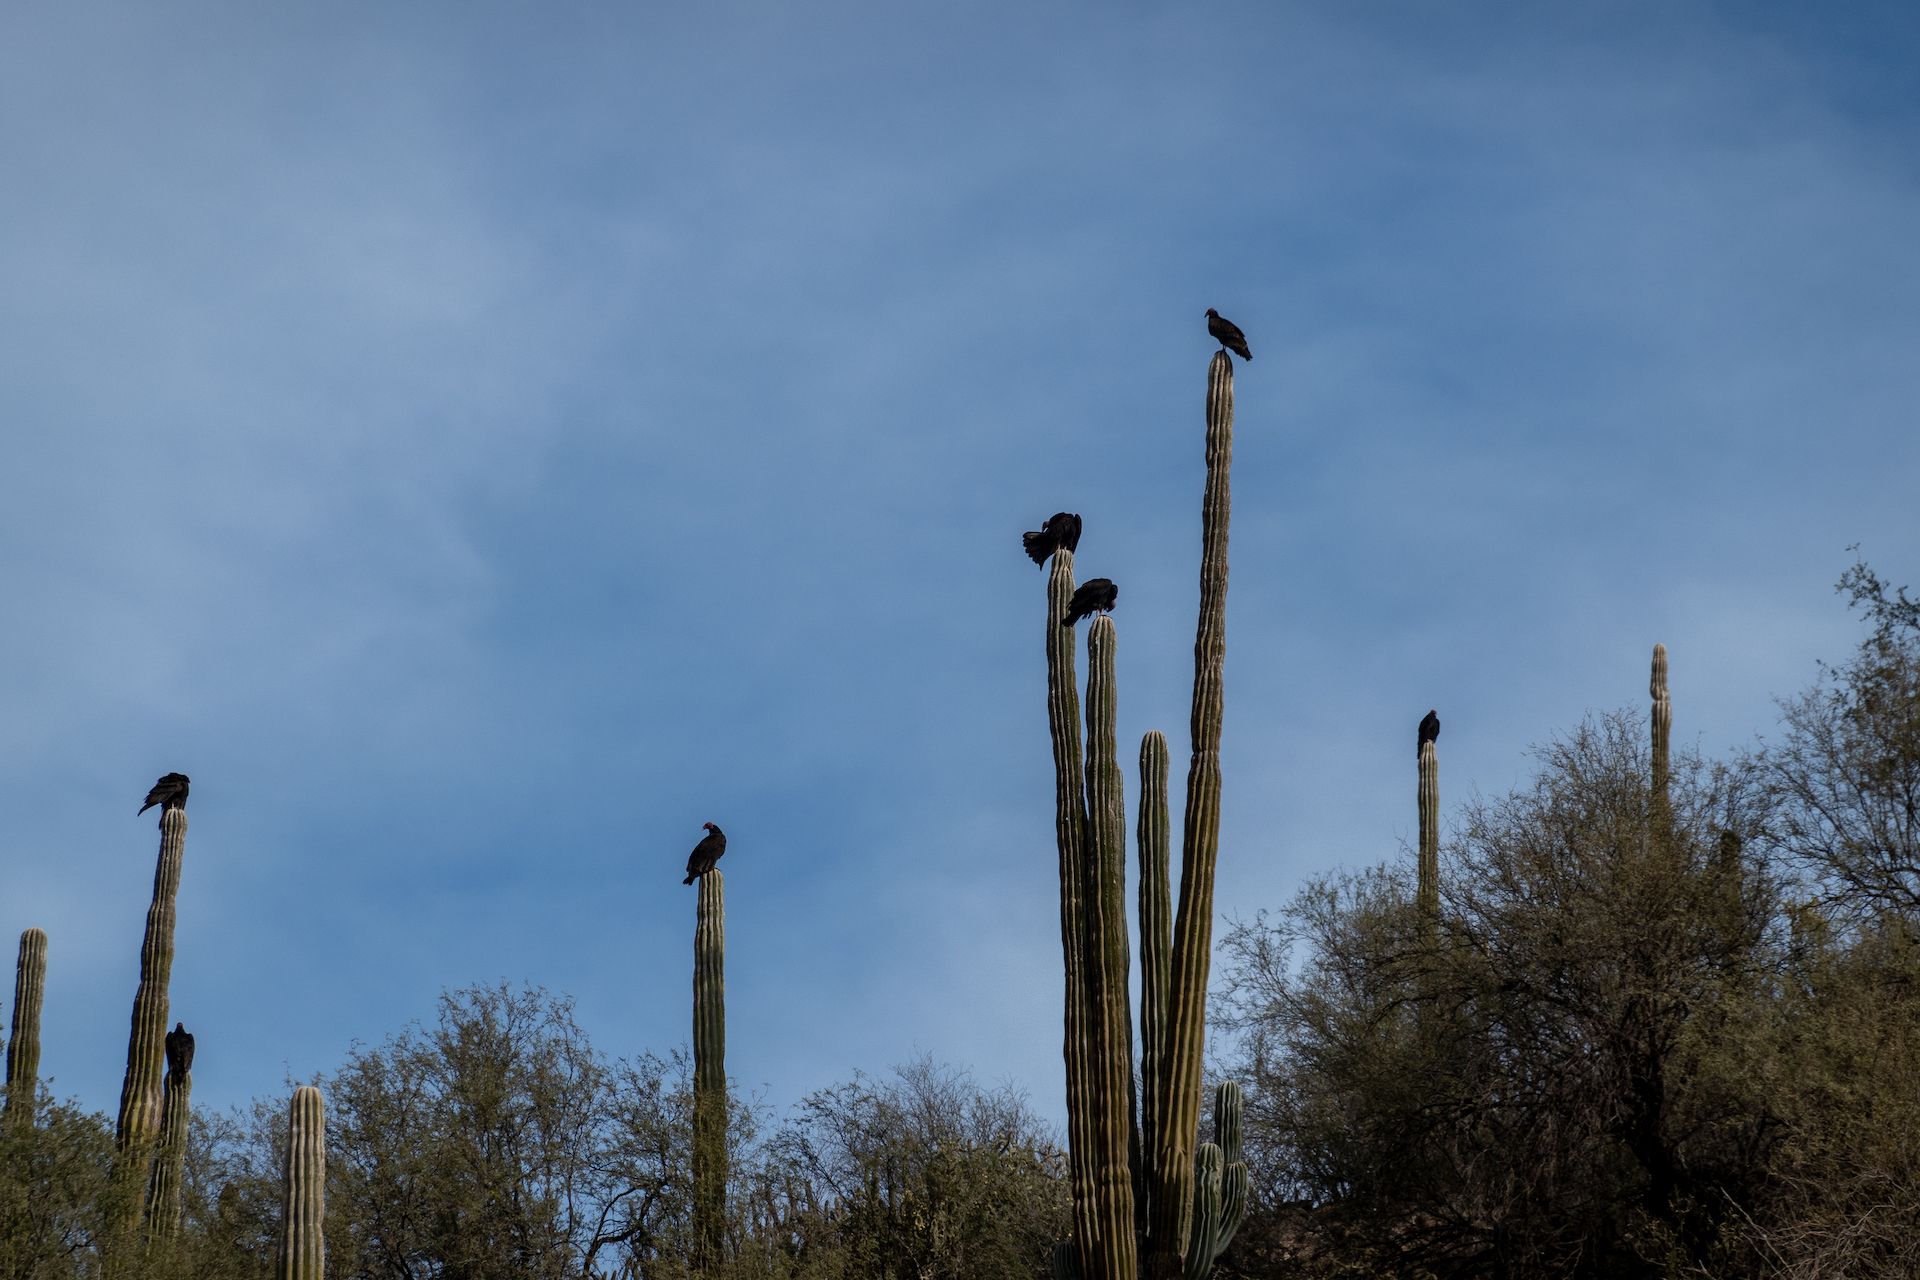 One bird per cactus